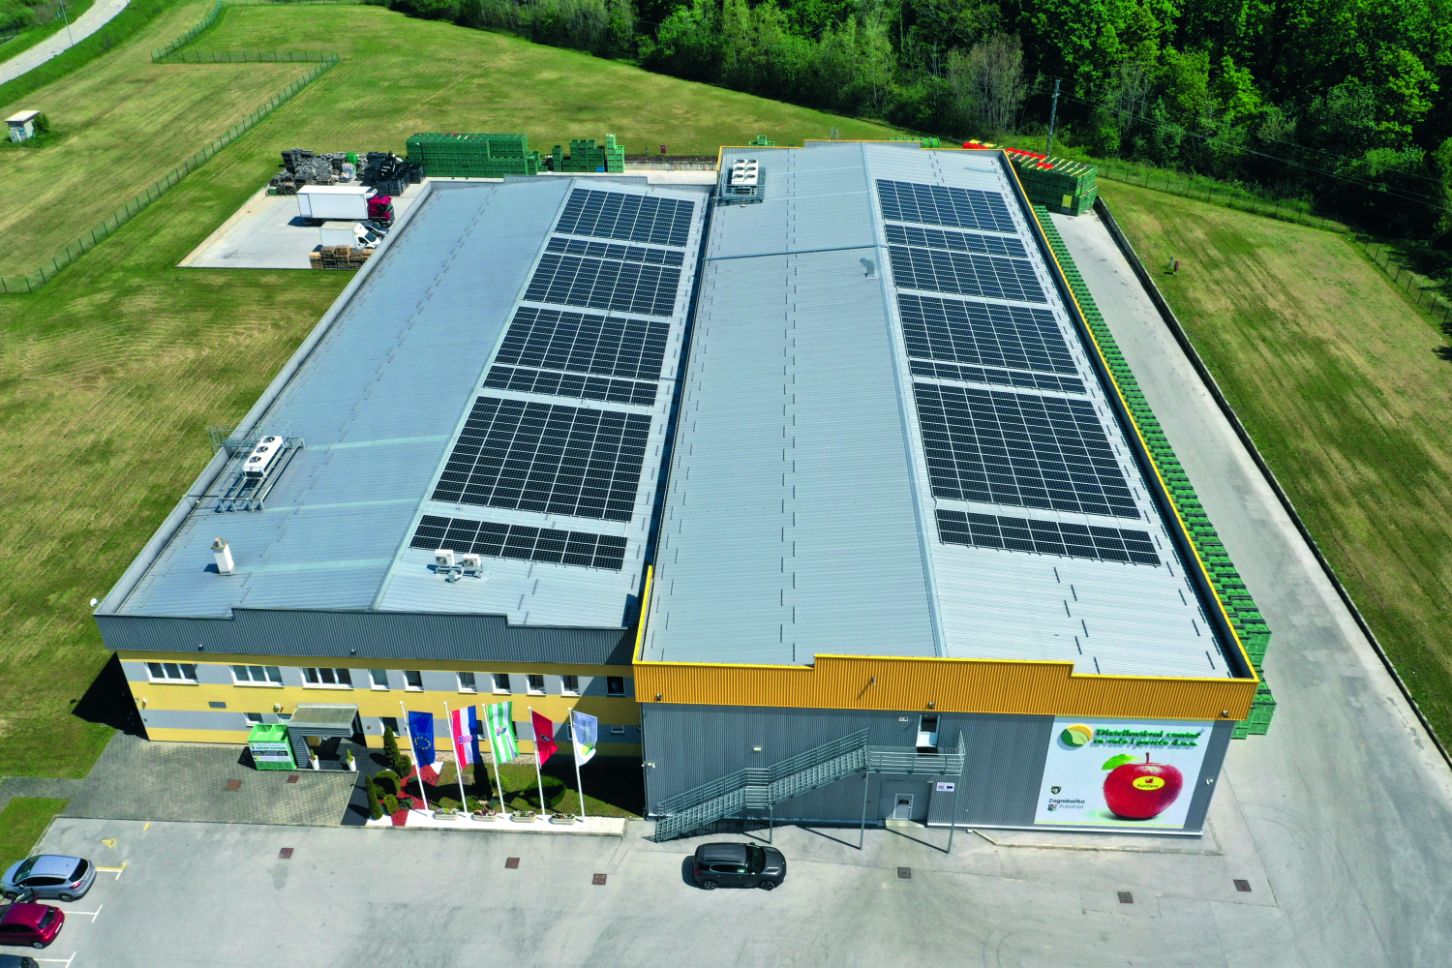 solari sunčana elektrana